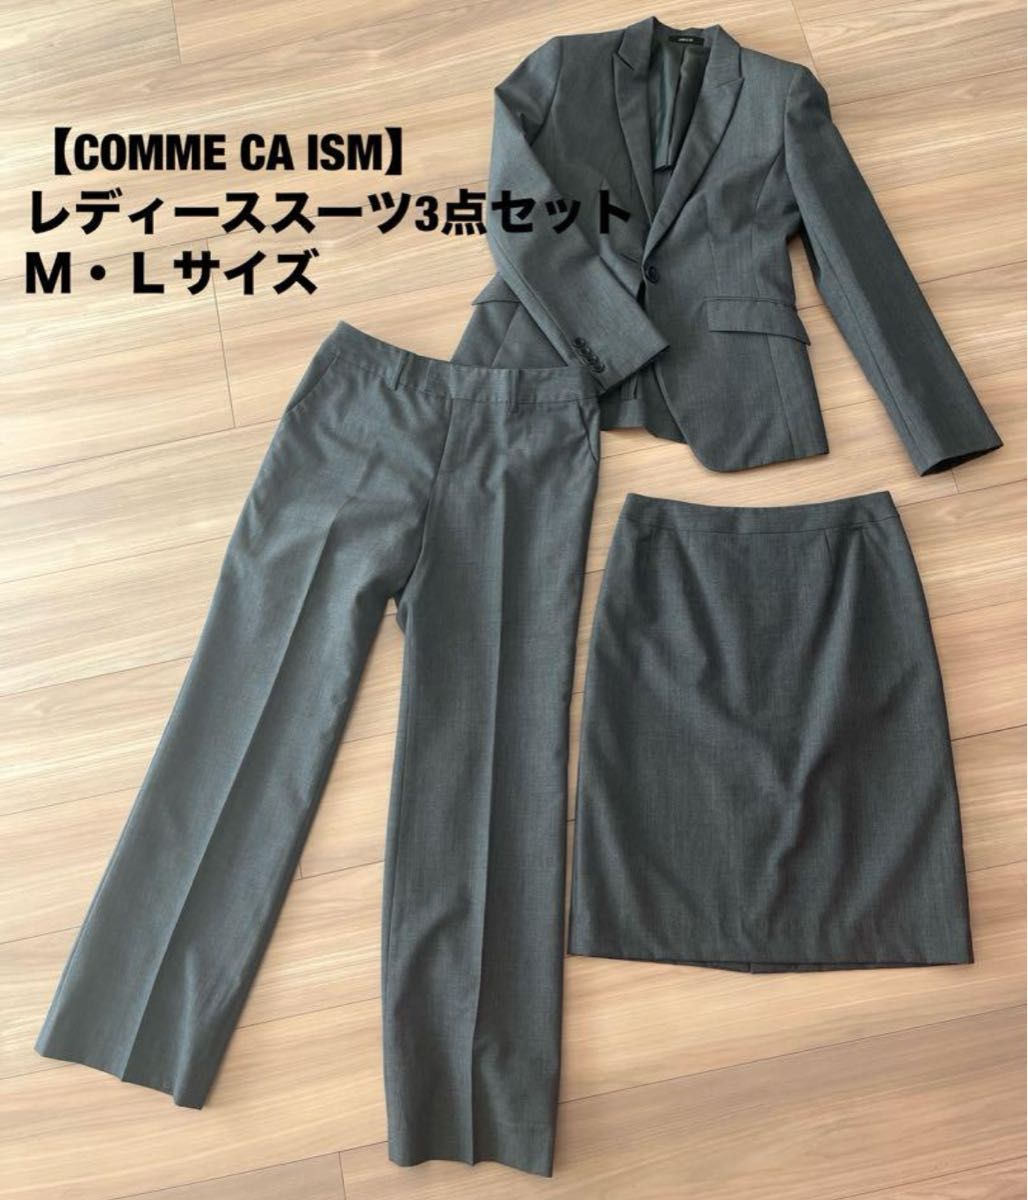 【COMME CA ISM】レディーススーツＭ・Ｌサイズ  ジャケット パンツ スカート 上下セットアップ